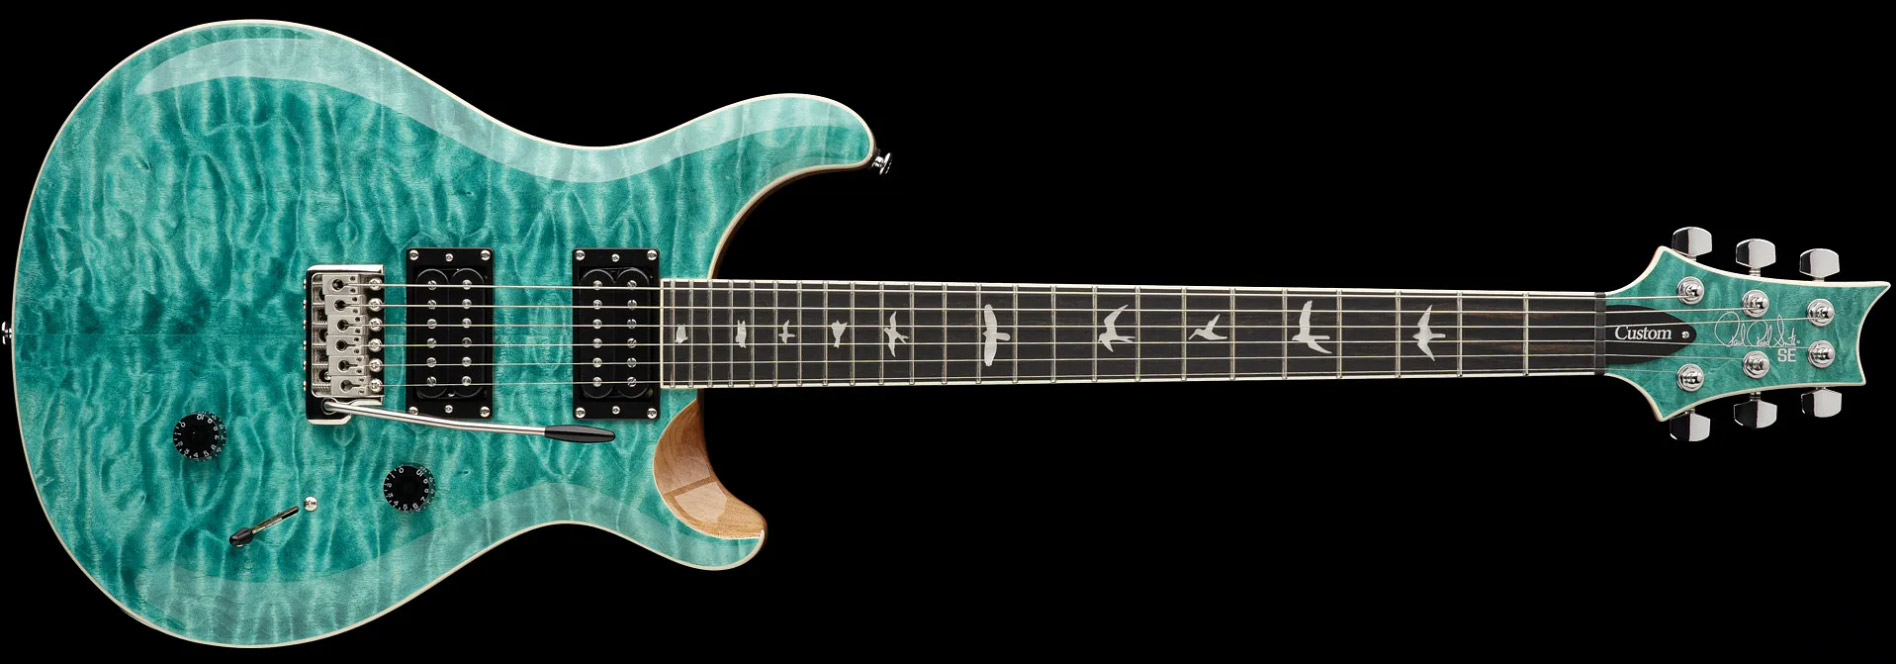 Prs Se Custom 24 Quilt 2h Trem Eb - Turquoise - Guitarra eléctrica de doble corte - Variation 3